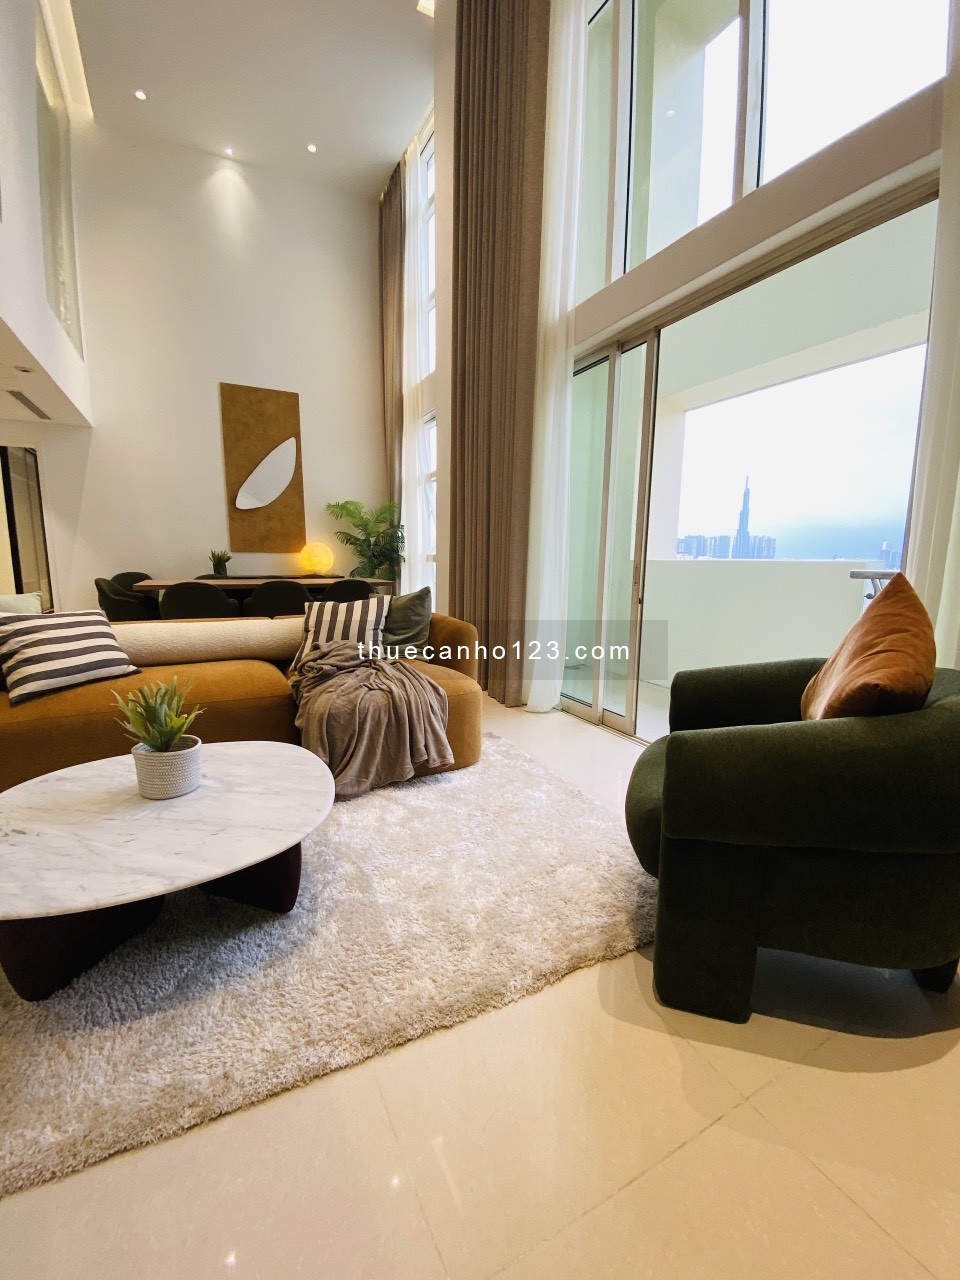 Duplex Penthouse cực kì cao cấp cho thuê 4PN, đầy đủ nội thất, 106 triệu, The Estella An Phú